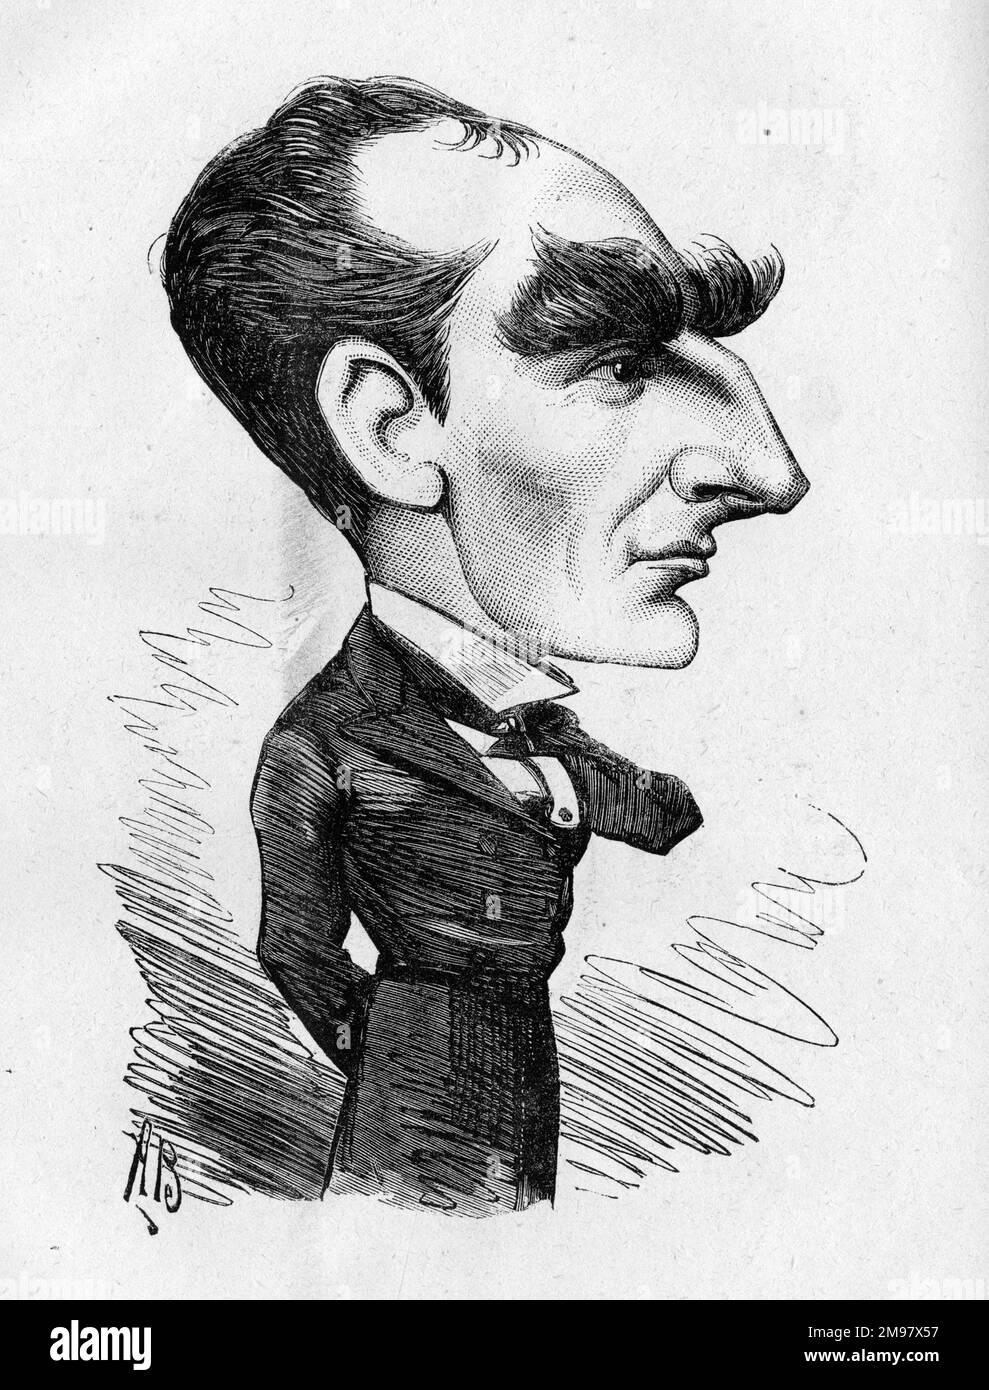 Caricatura de Sir Arthur Wing Pinero (1855-1934), actor, dramaturgo y director de escena inglés. Su nueva obra, Imprudence, estaba en producción en este momento en el Folly Theatre de Londres. Foto de stock